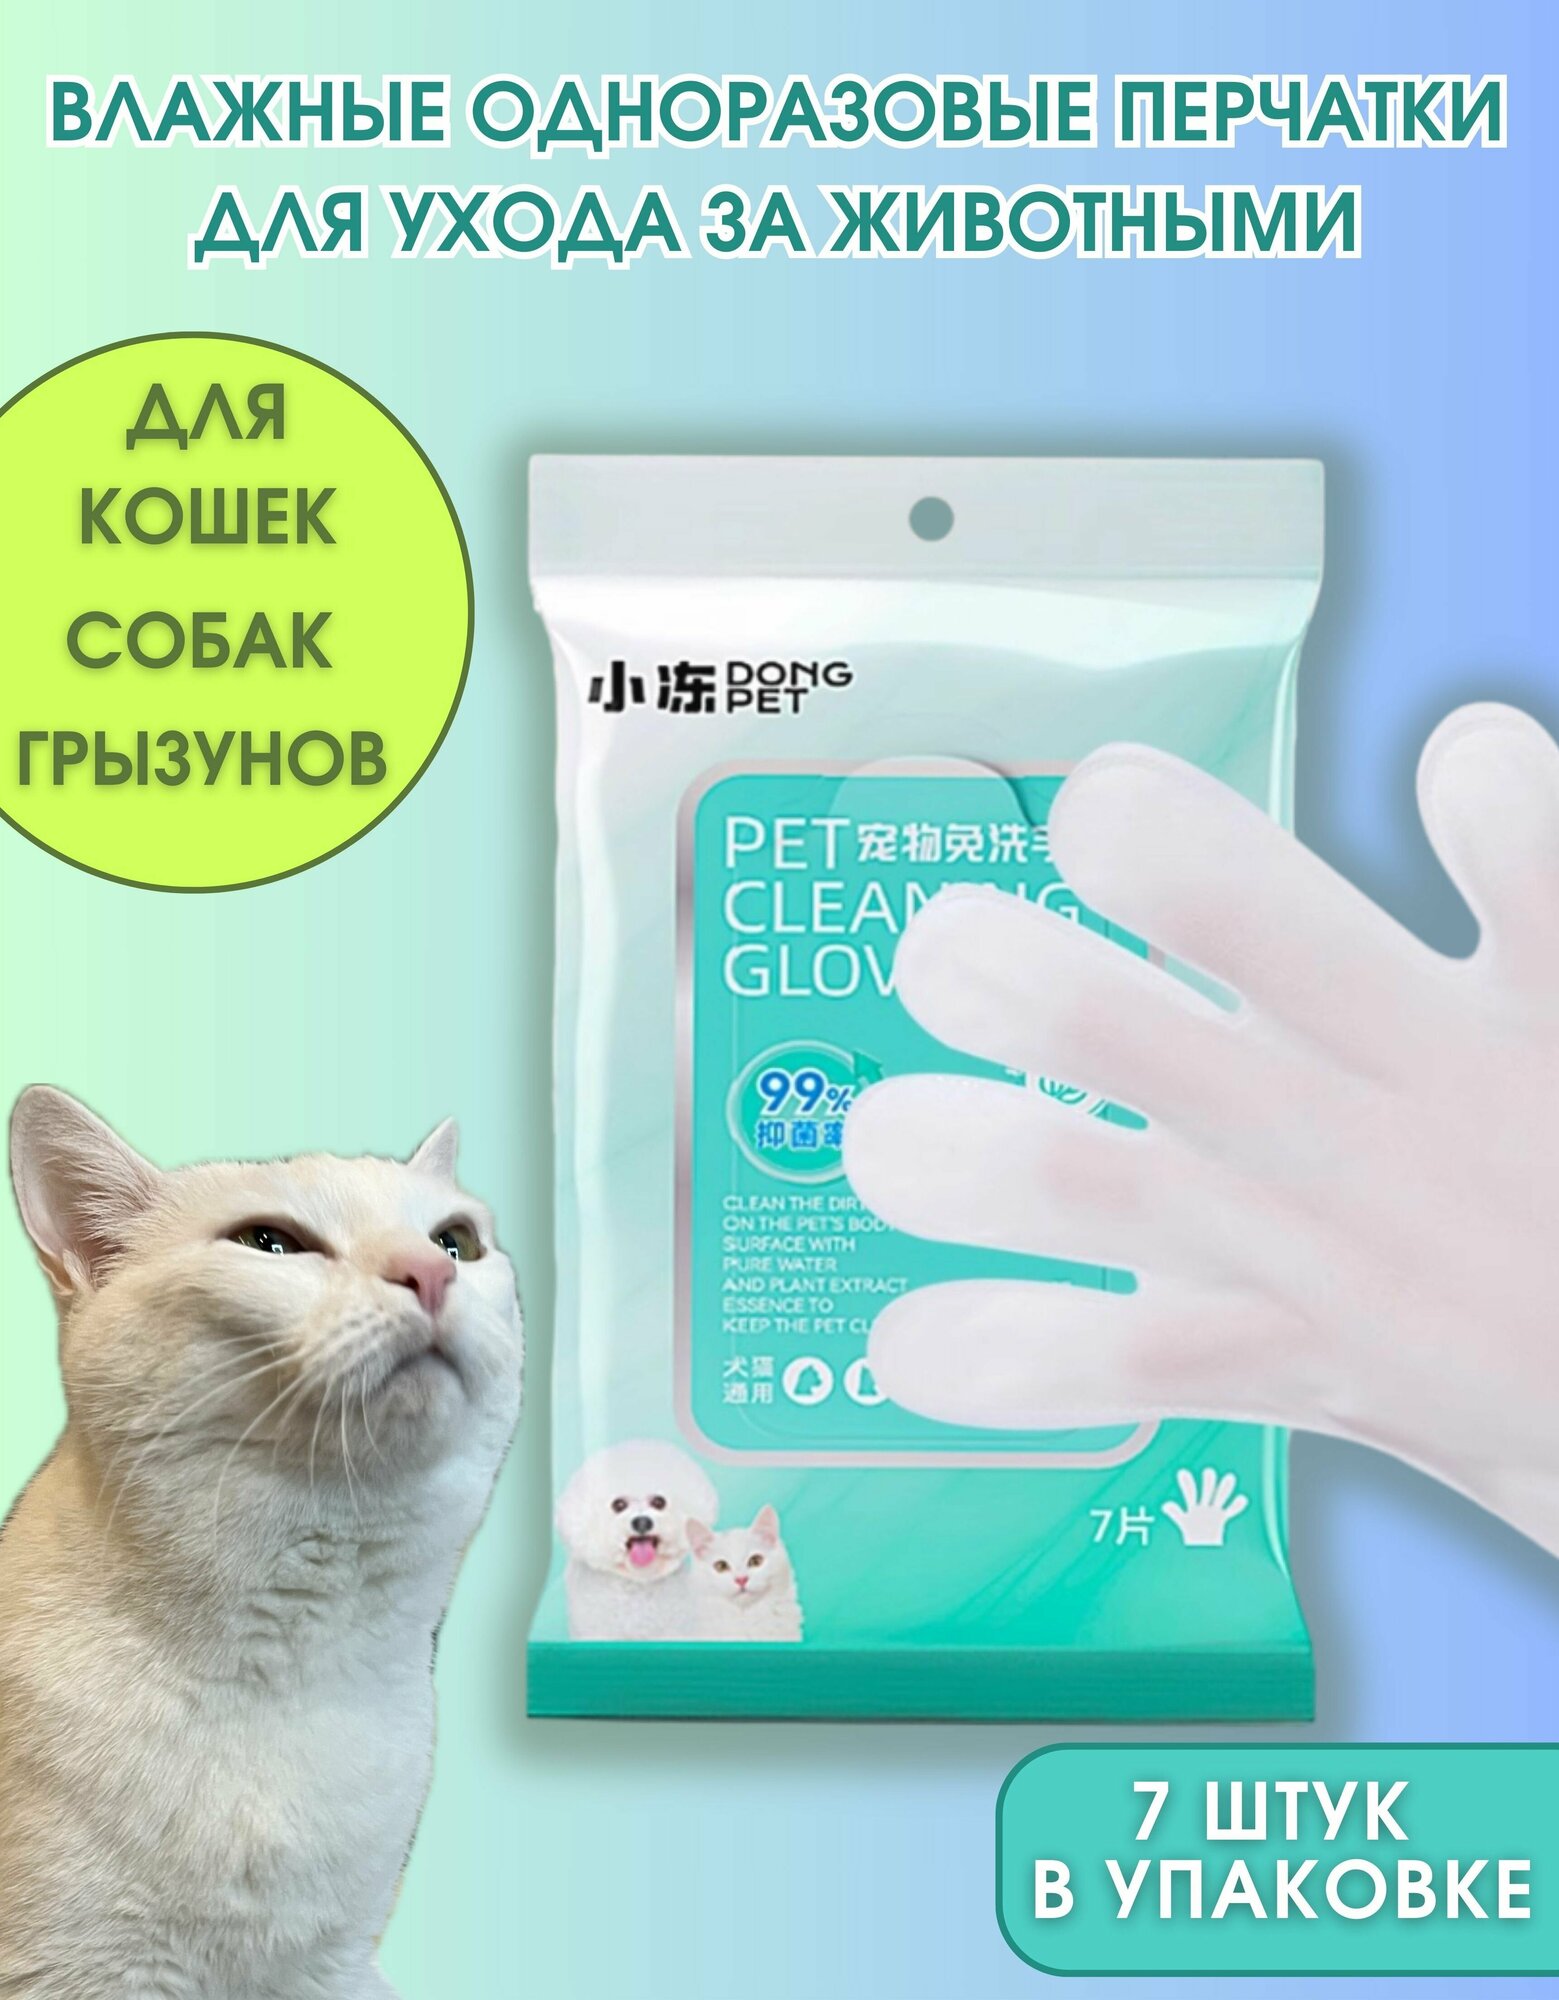 Одноразовые влажные перчатки для мытья и чистки кошек собак и грызунов Dong Pet 7 шт.